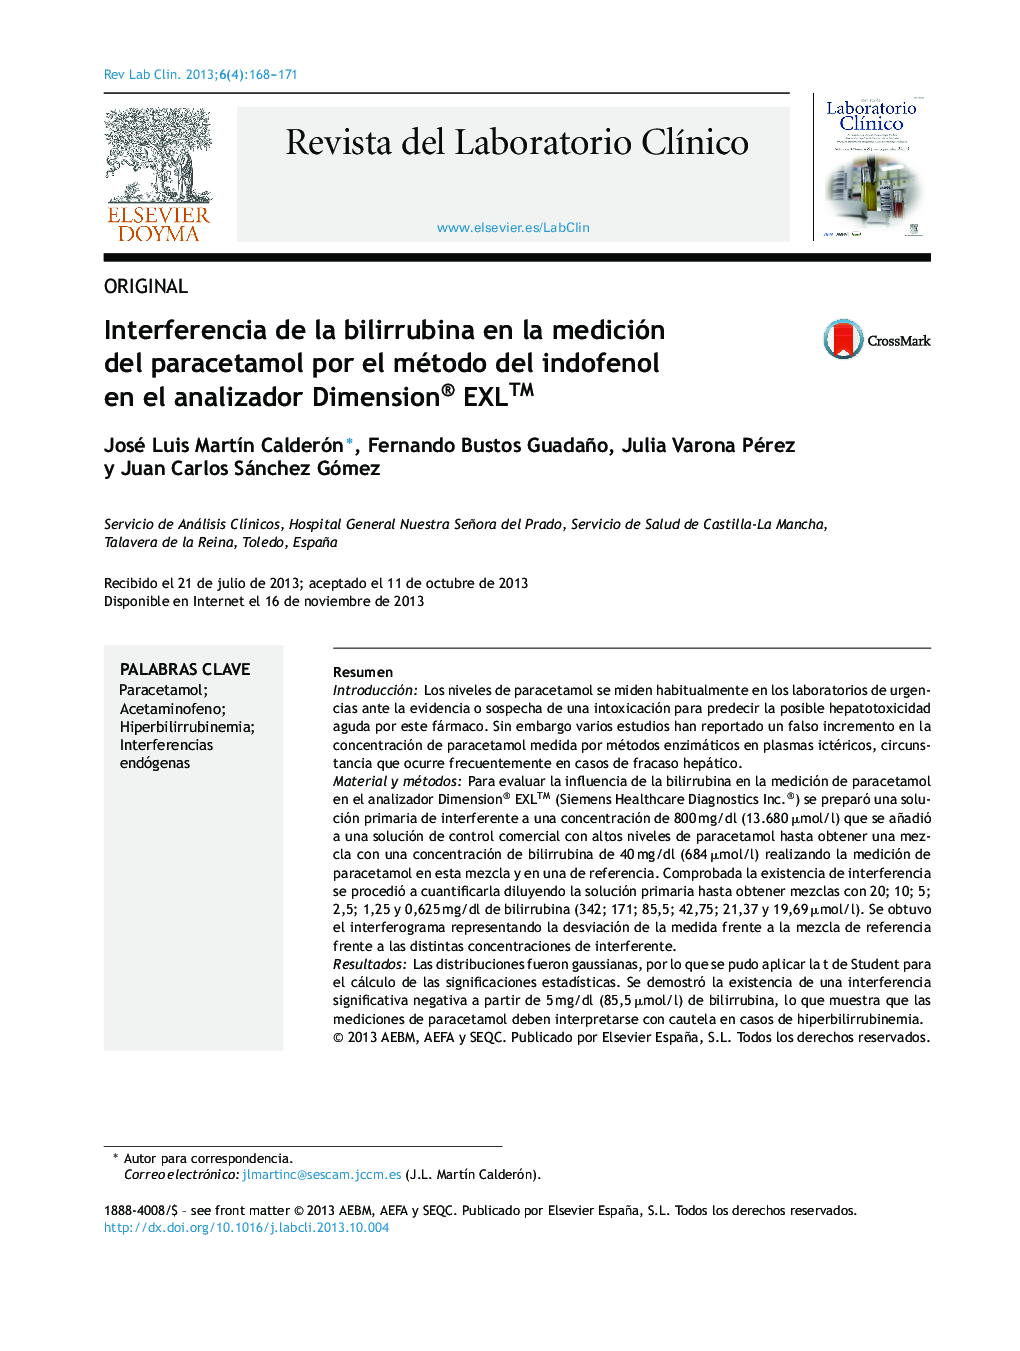 Interferencia de la bilirrubina en la medición del paracetamol por el método del indofenol en el analizador Dimension® EXLâ¢